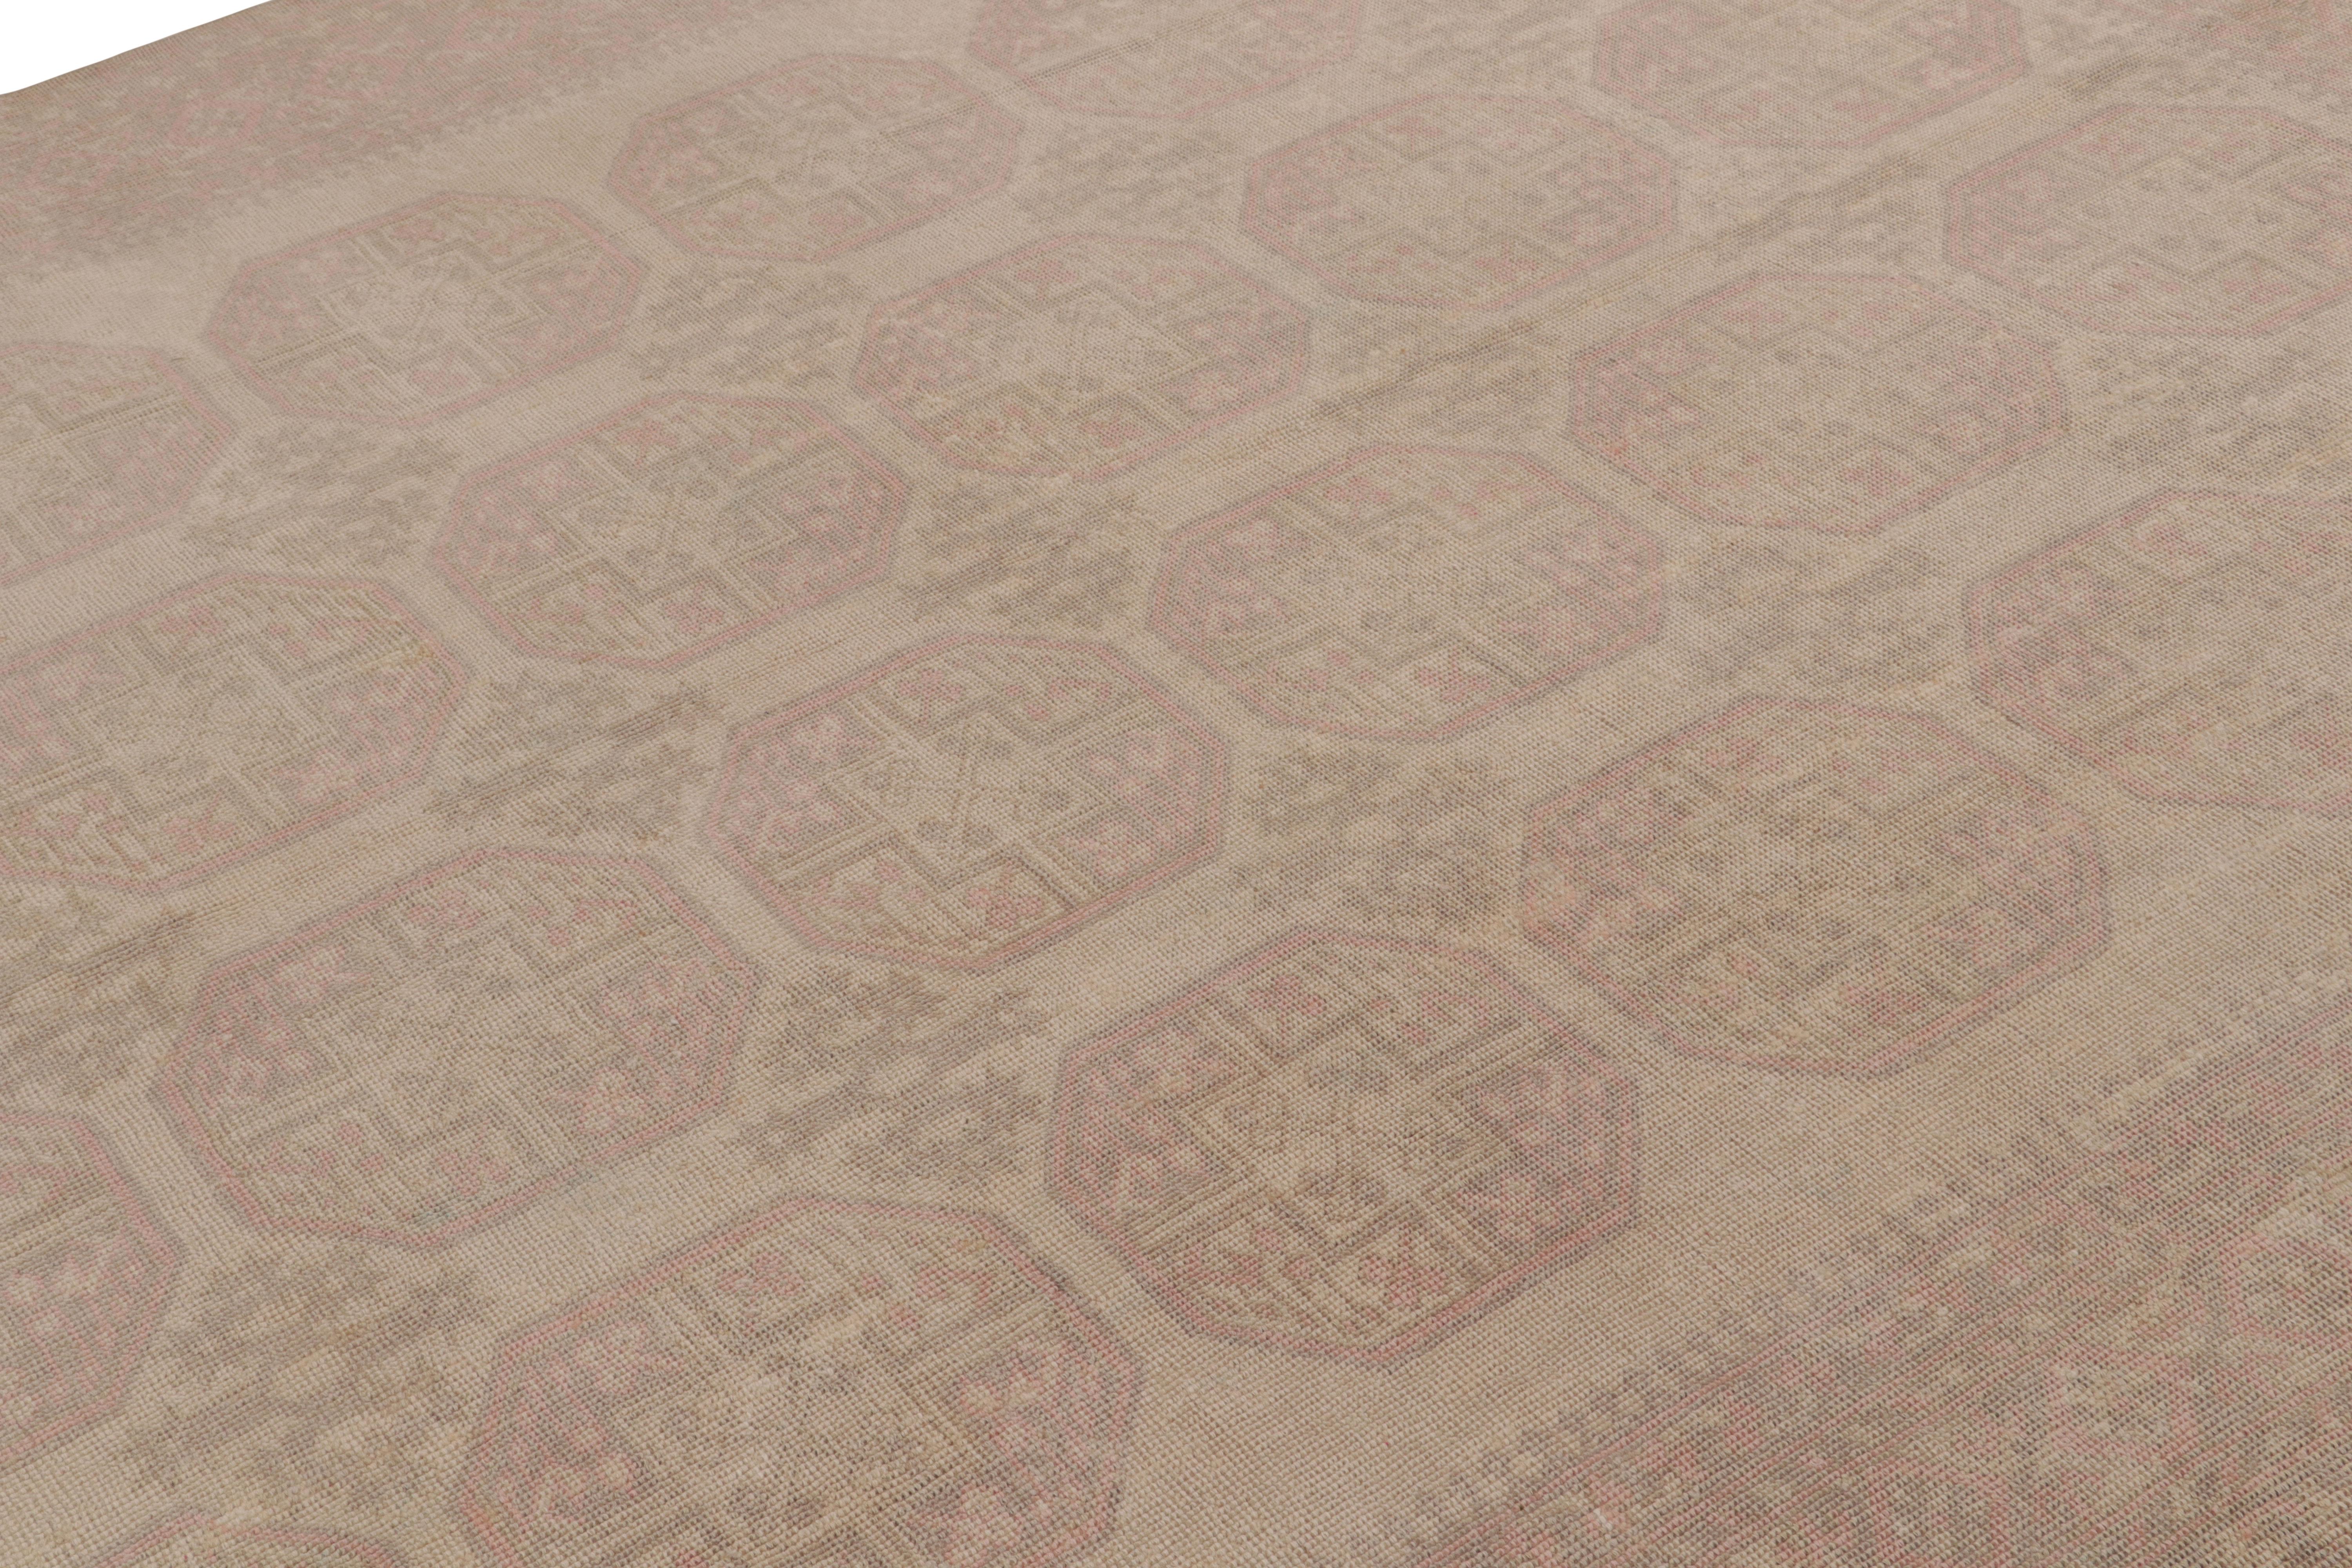 Ce tapis vintage 7x10 est considéré comme un rare tapis Ersari du milieu du siècle, noué à la main en laine et originaire de Turquie vers 1950-1960.

Sur le Design/One

Les Ersari sont une sous-tribu du peuple turkmène, souvent connue pour ses